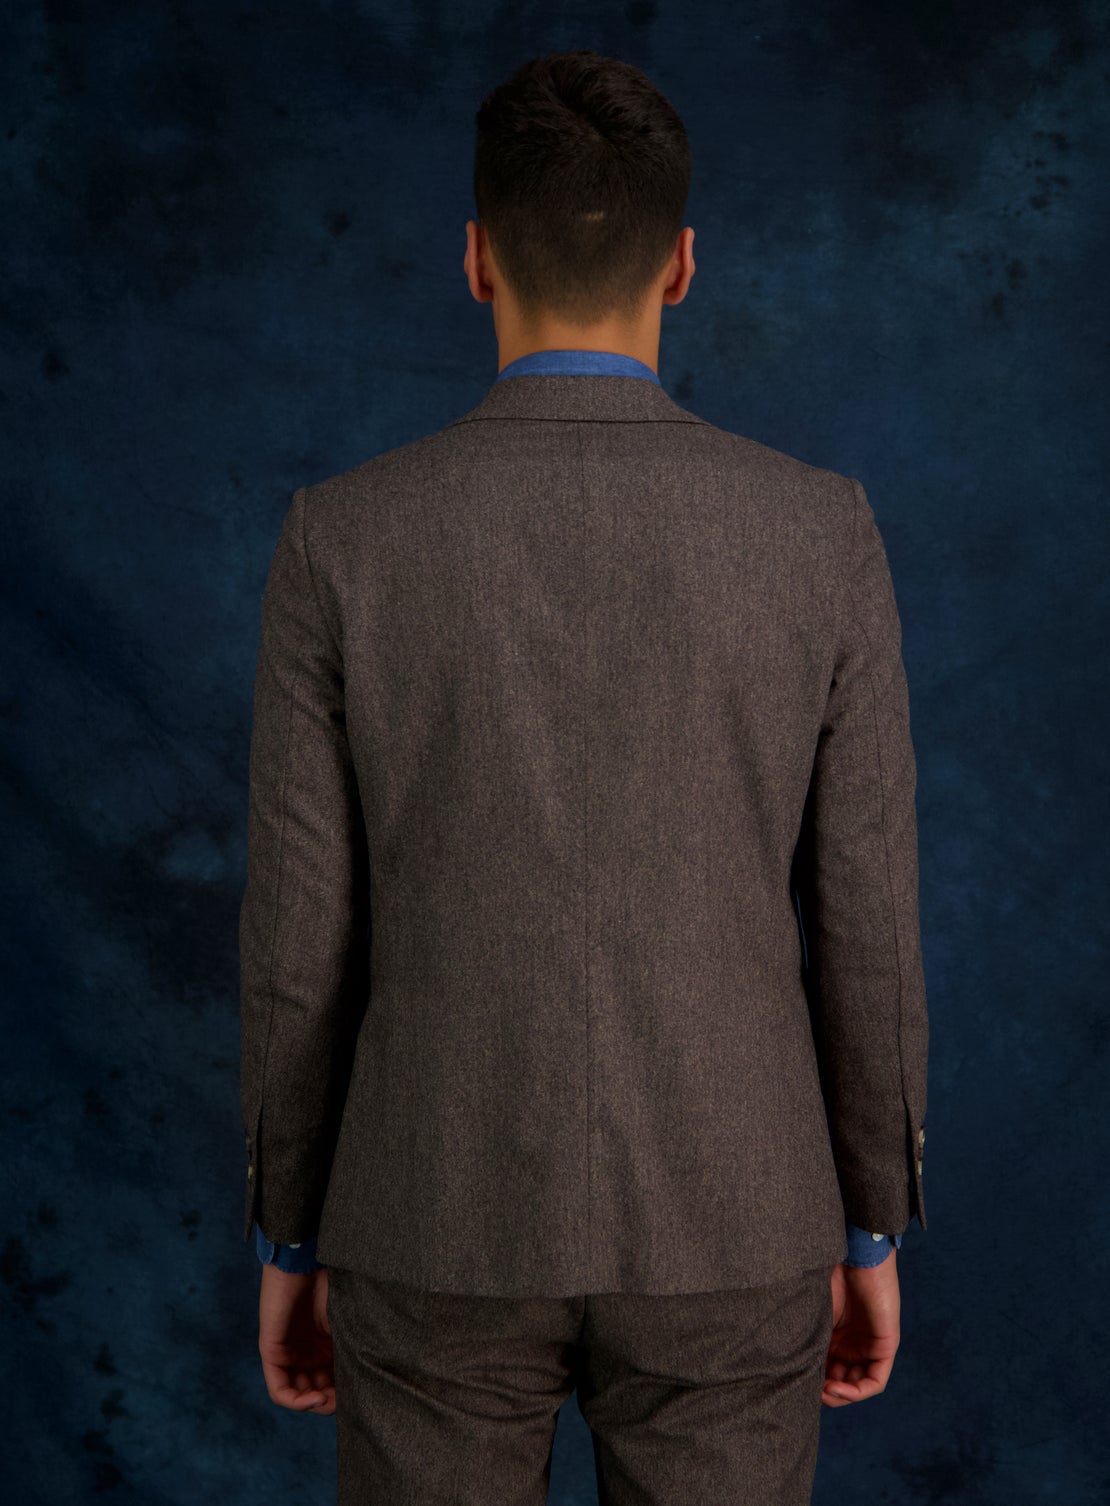 Brown Tweed Separate Jacket